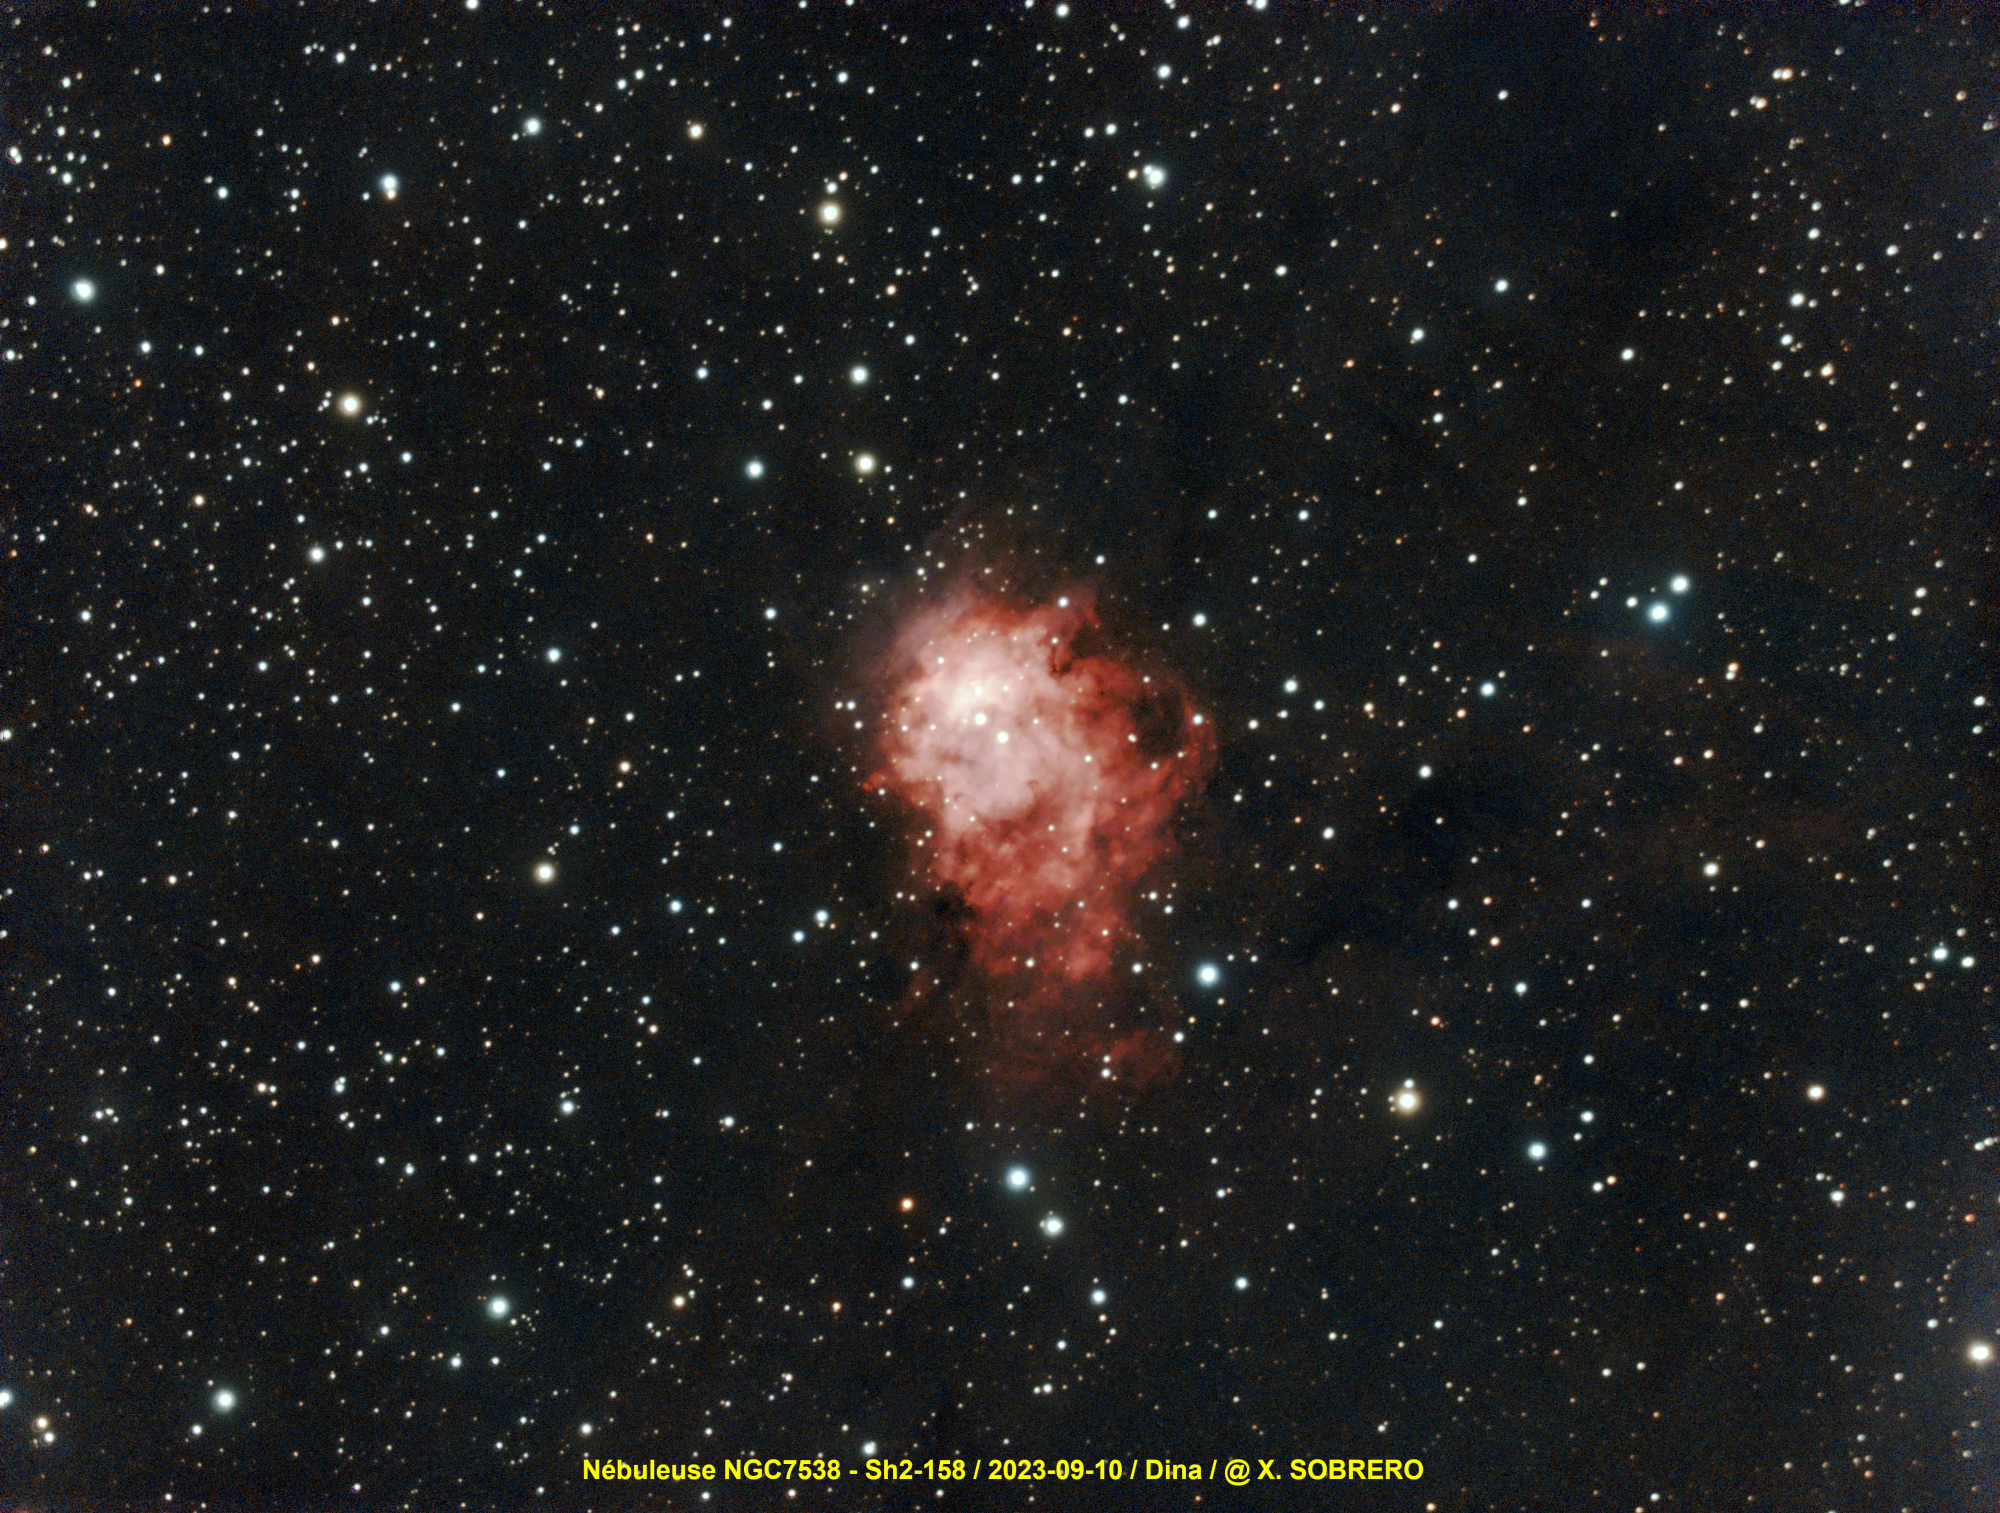 NGC7538_2023-09-10_DIINA.thumb.jpg.197f0a00ff551602e518617bccf7c132.jpg